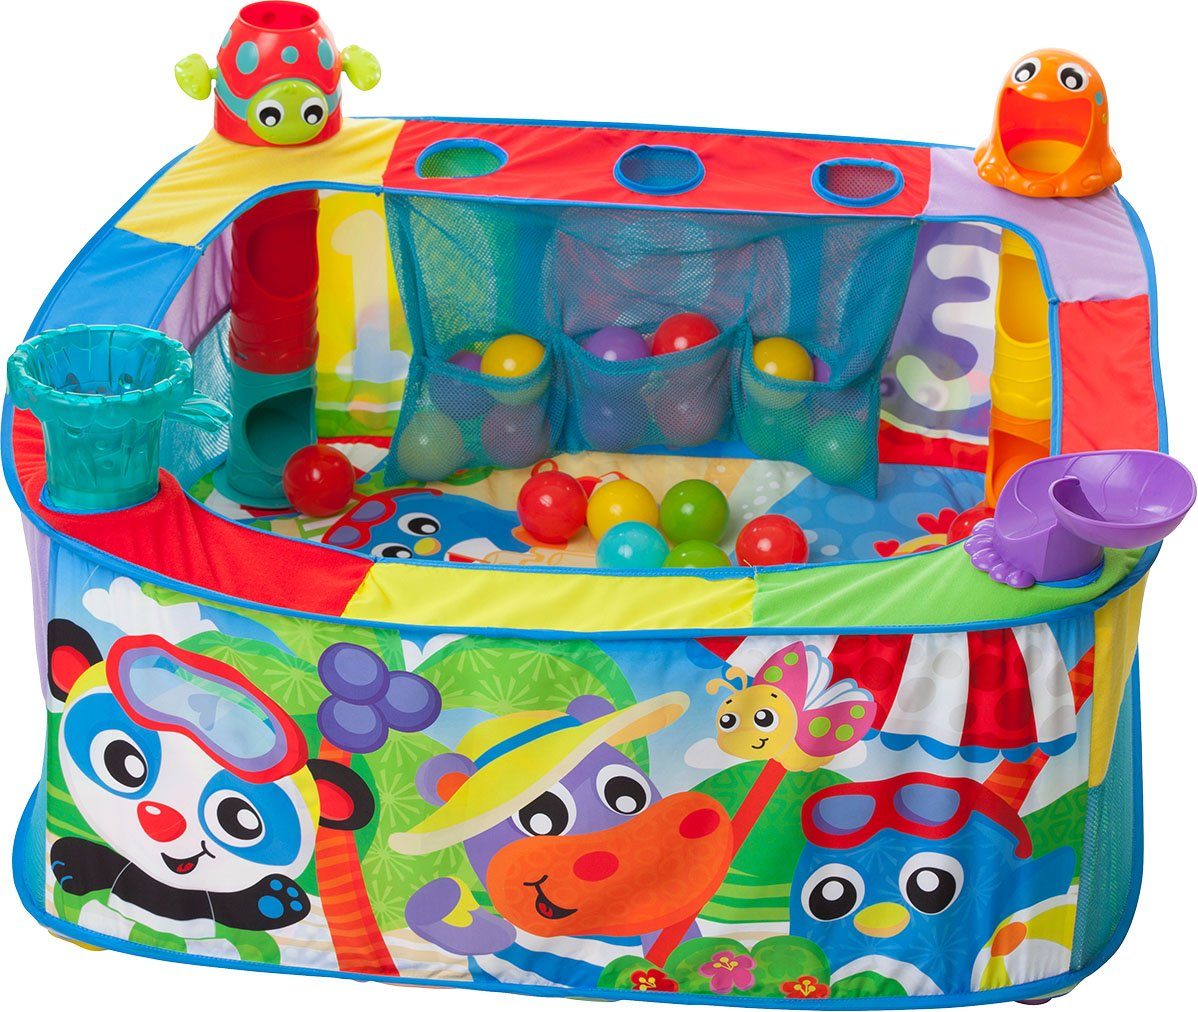 Playgro Bällebad Pop Up Baby, mit vier unterschiedlichen Aktionsstationen